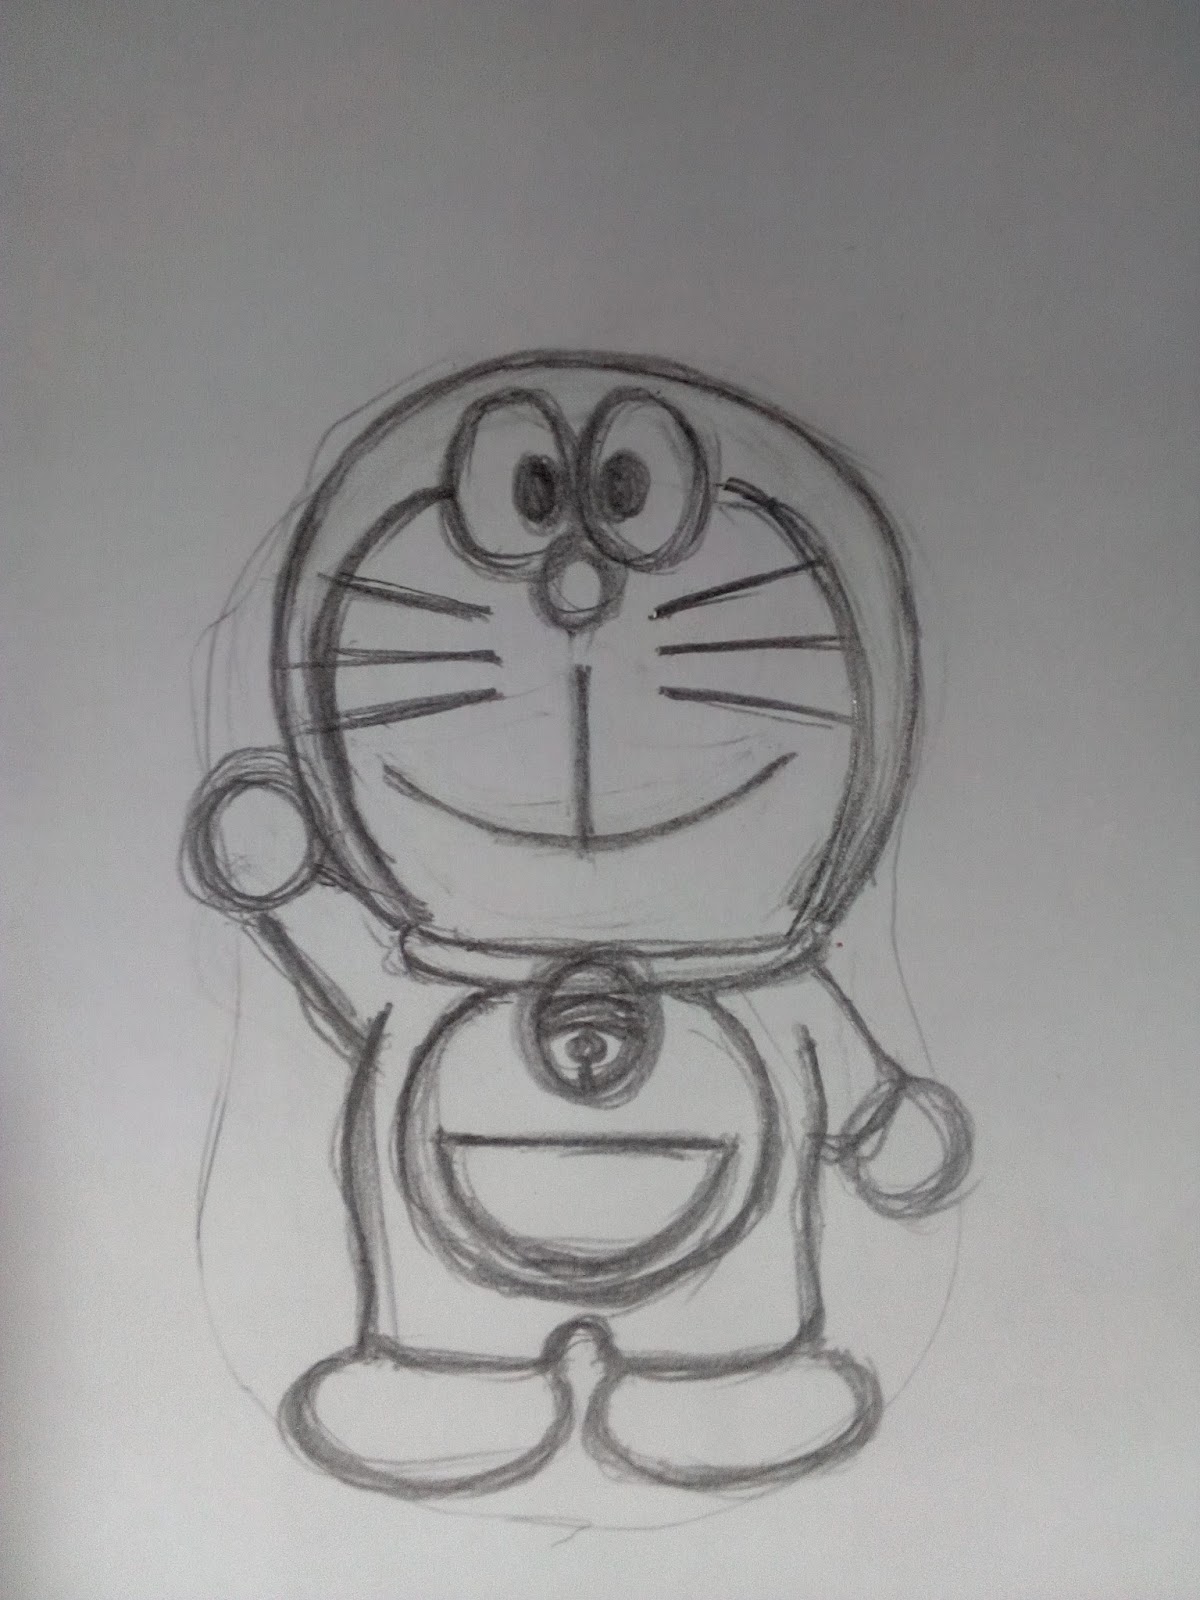 60 Gambar Sketsa Doraemon Yang Mudah Gudangsket